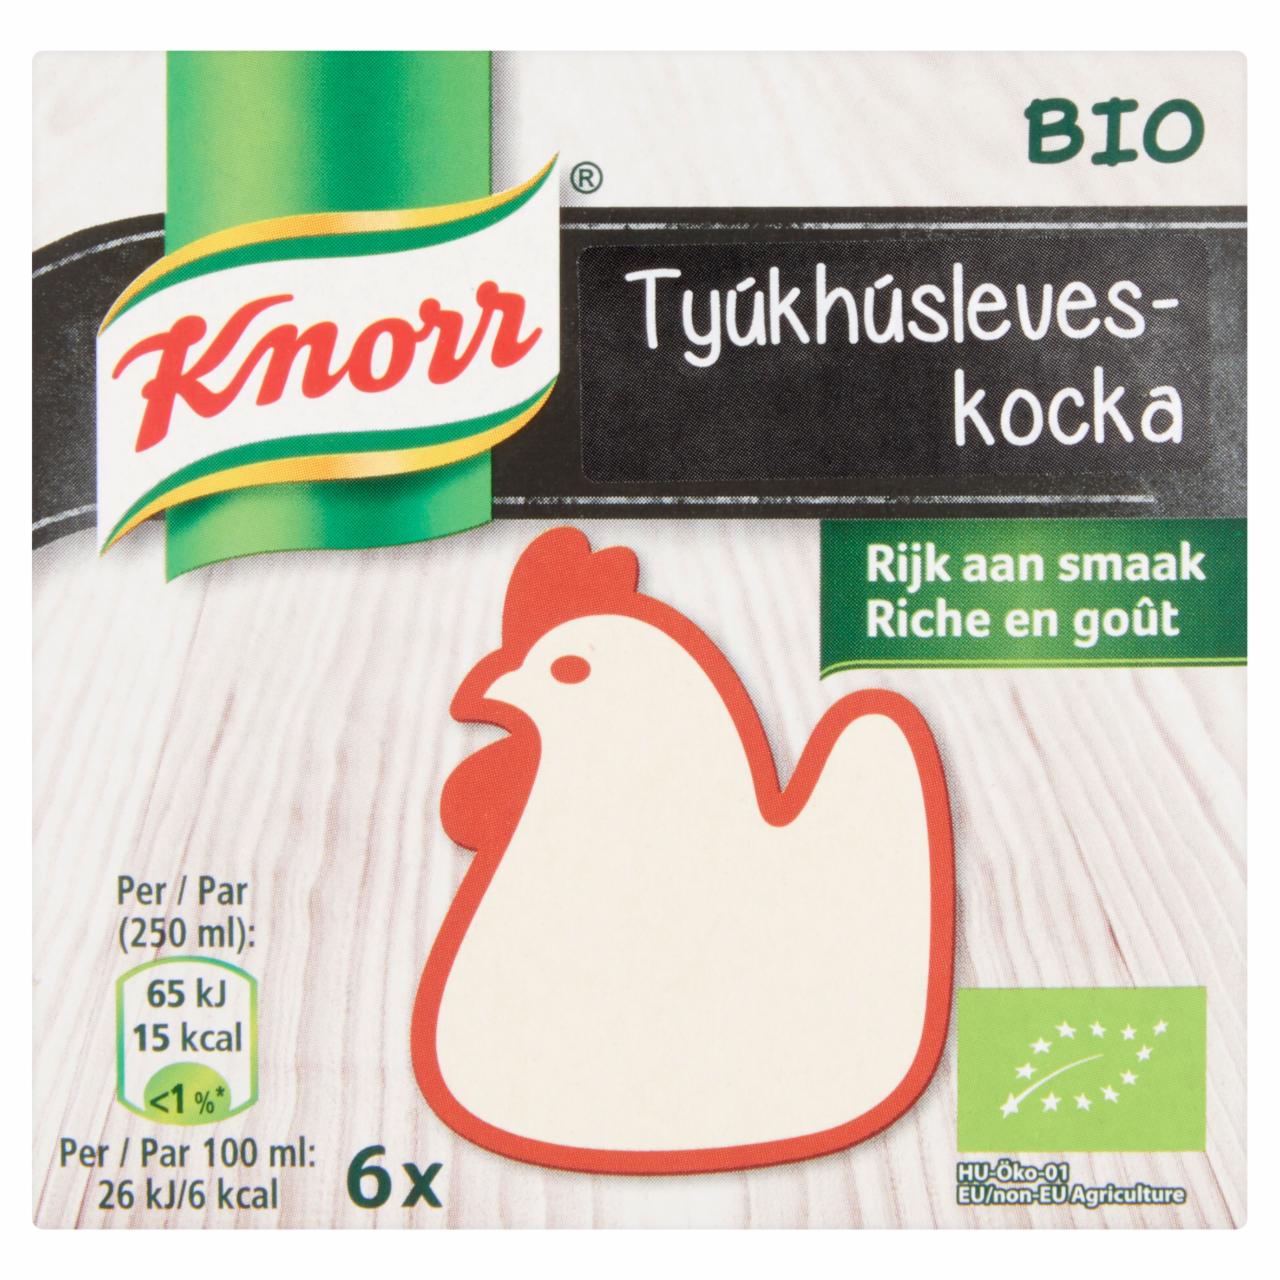 Képek - Knorr BIO tyúkhúsleveskocka 60 g